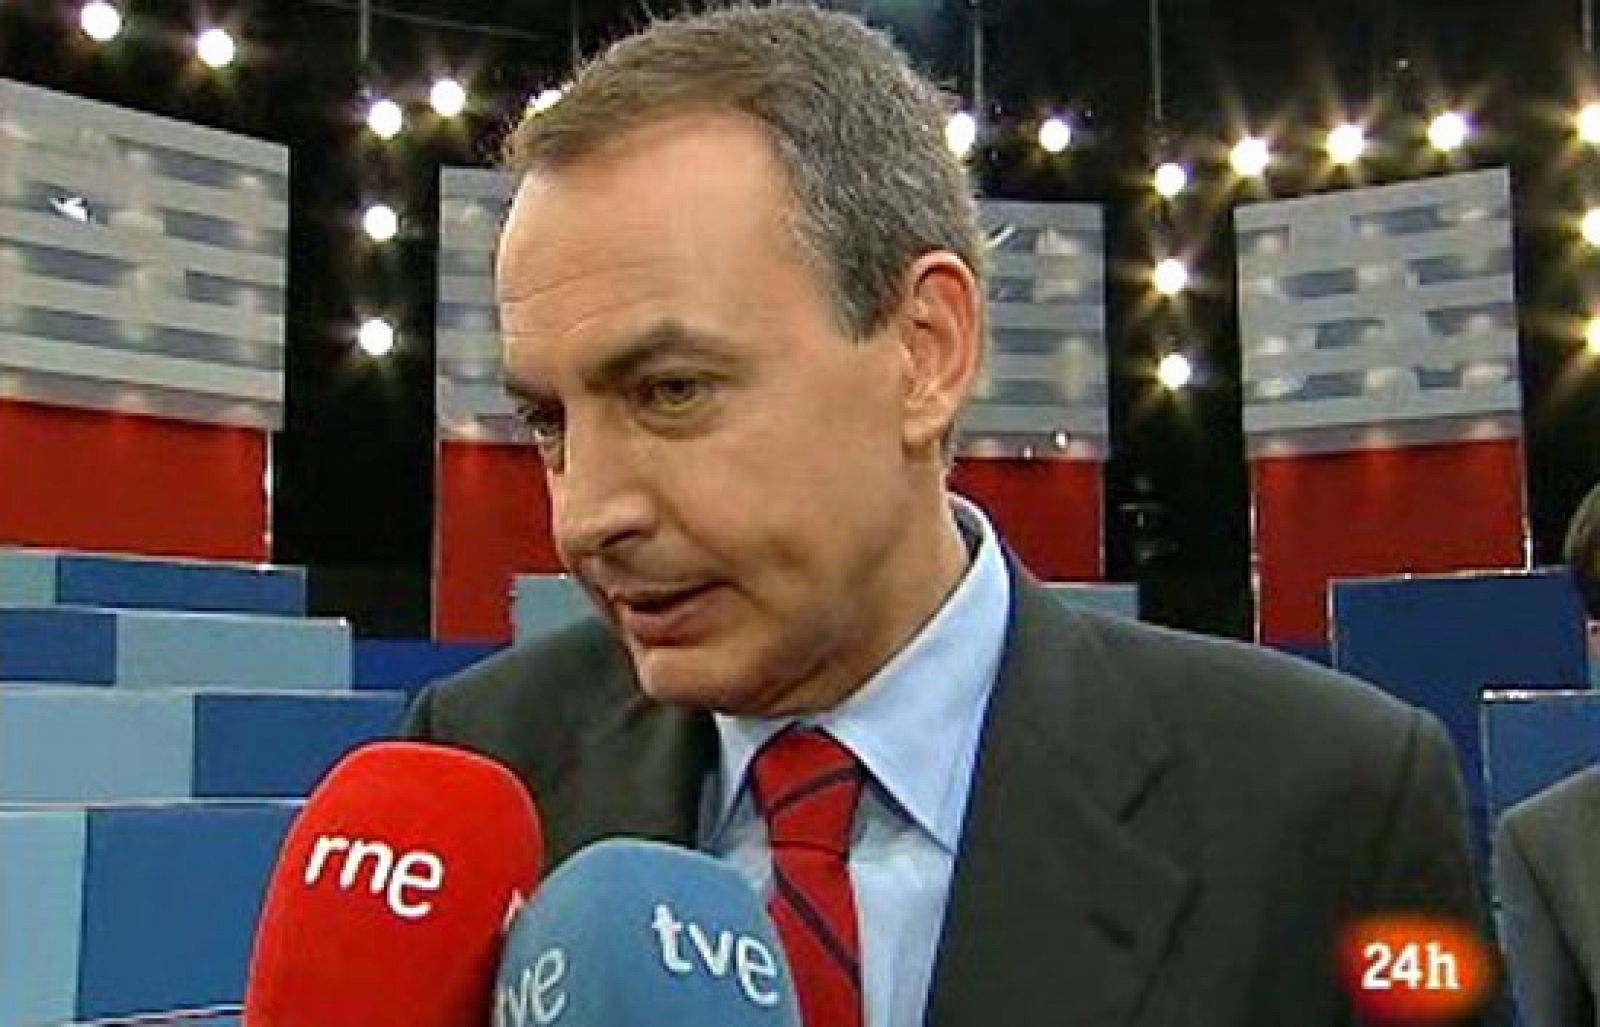 Tengo una pregunta para usted - Zapatero también hace balance del TPPU